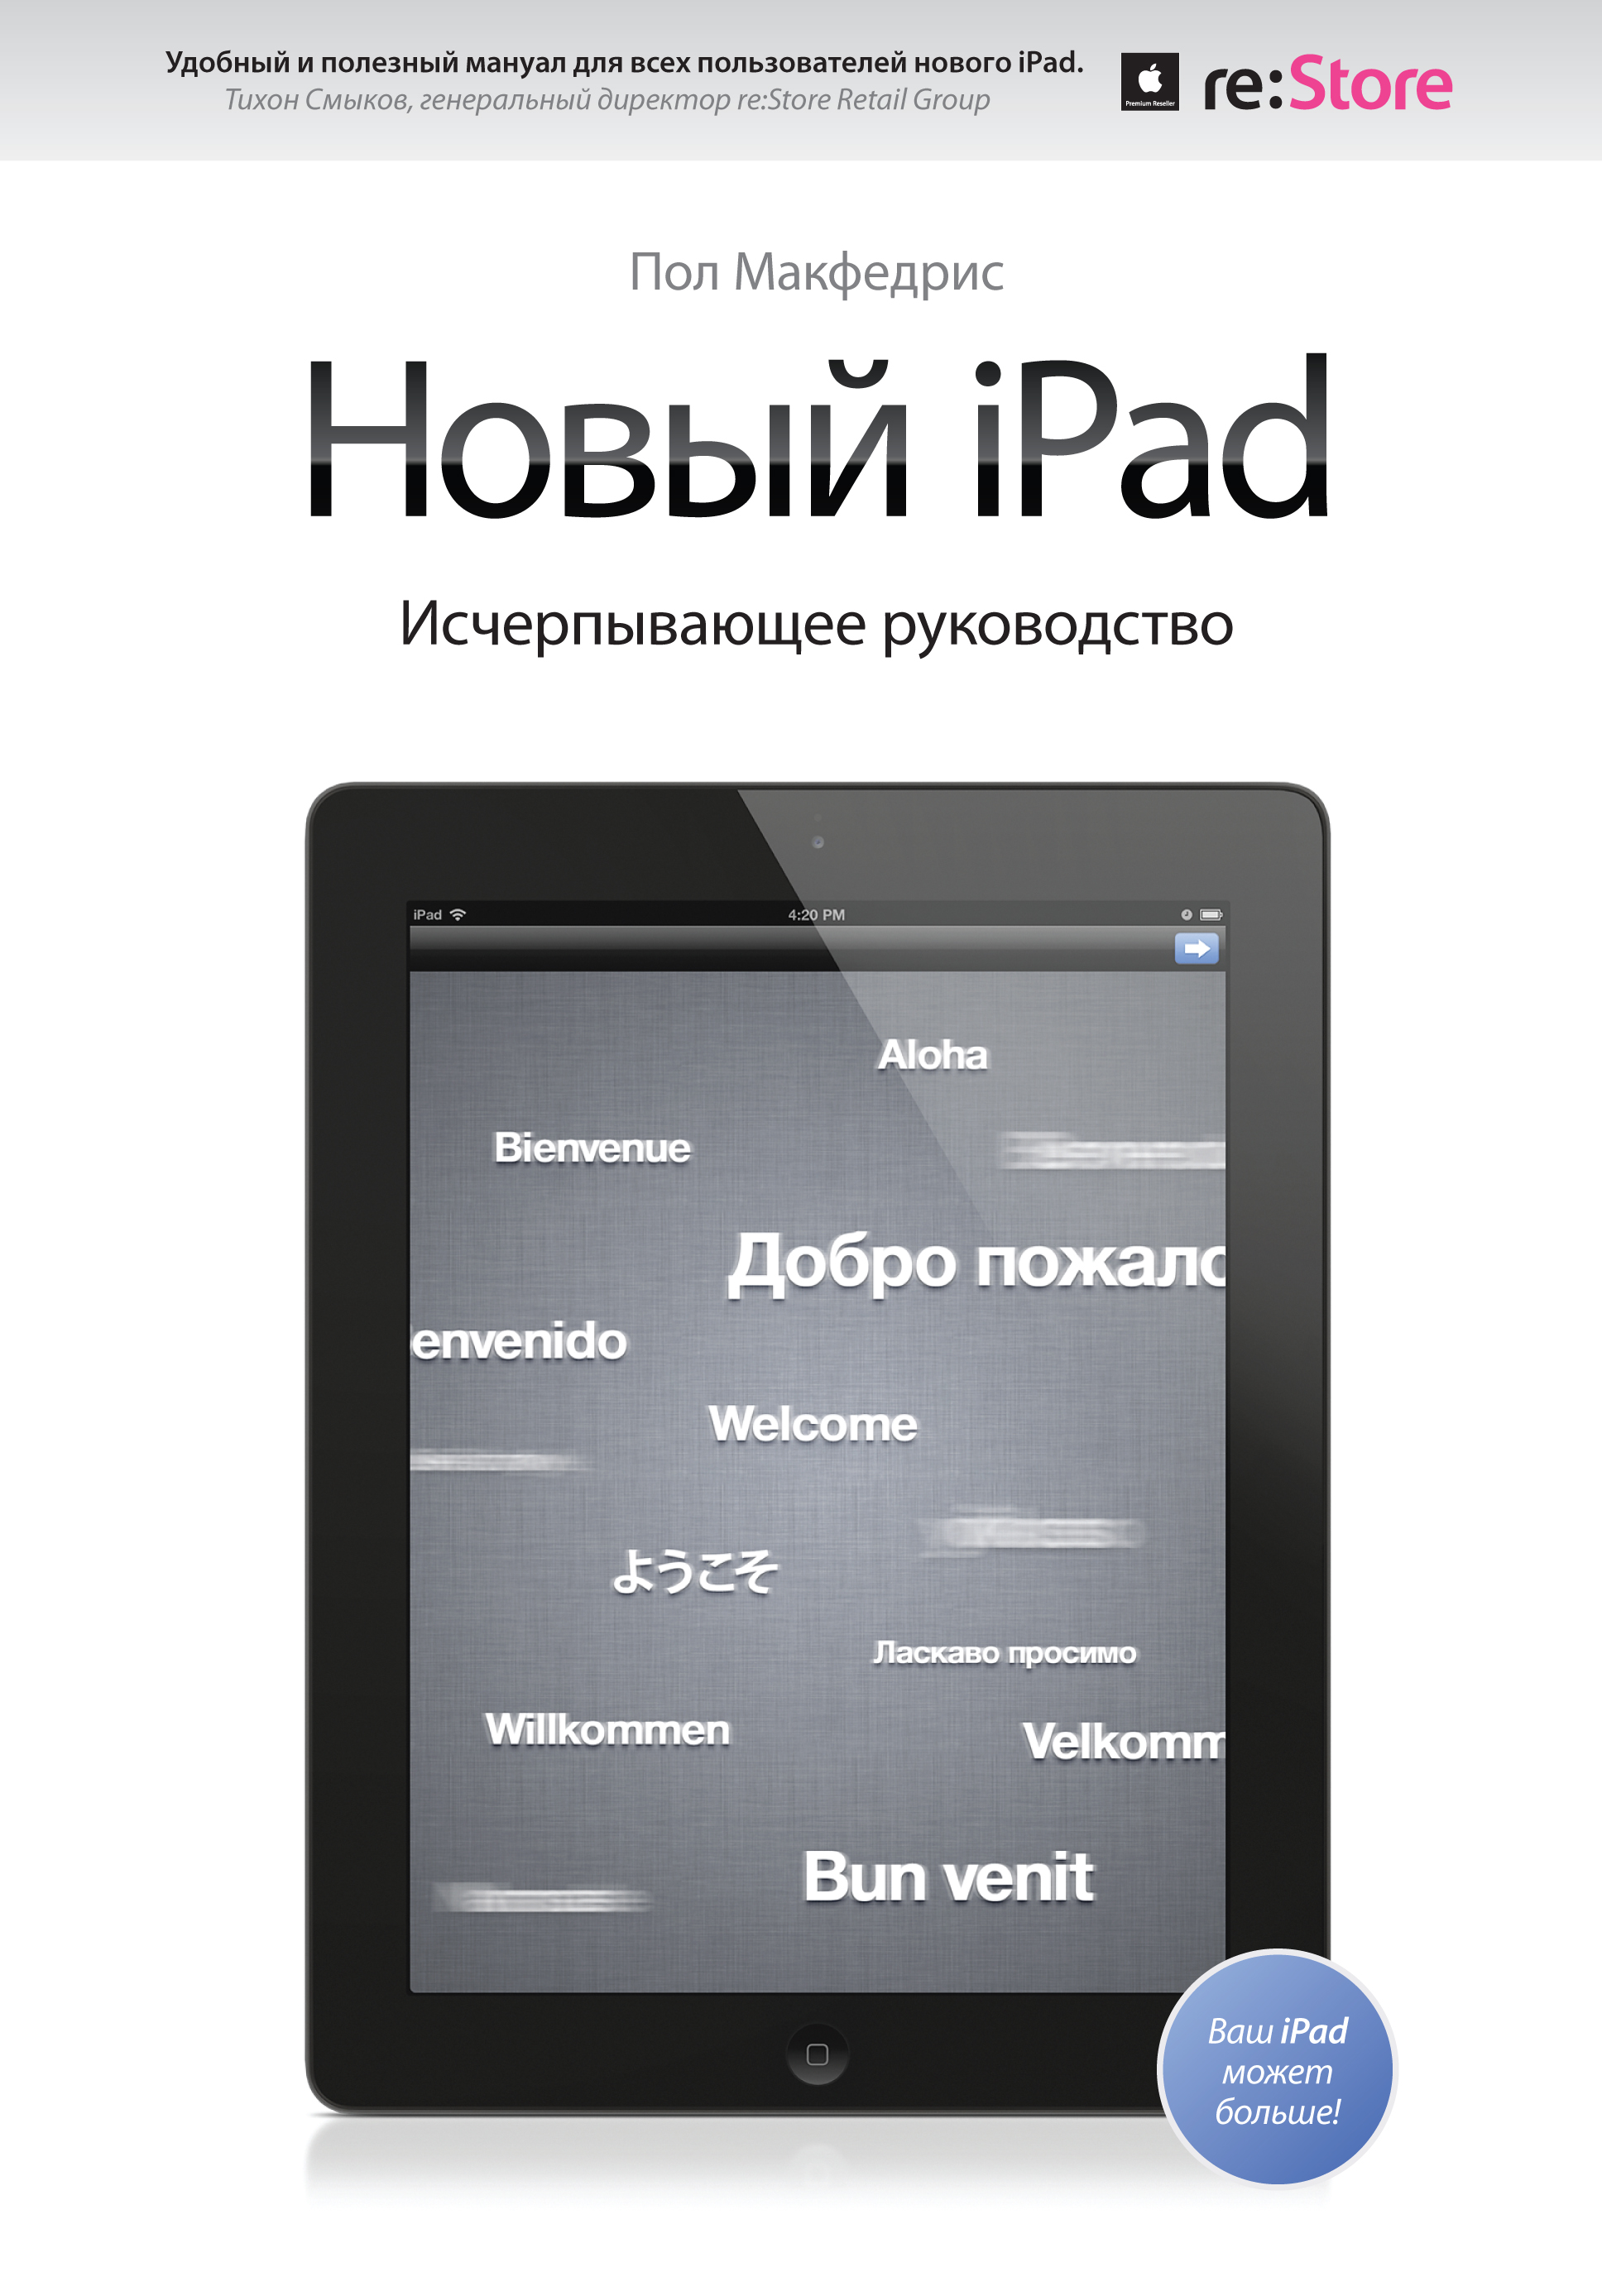 макфедрис пол новый ipad исчерпывающее руководство МакФедрис Пол Новый iPad. Исчерпывающее руководство